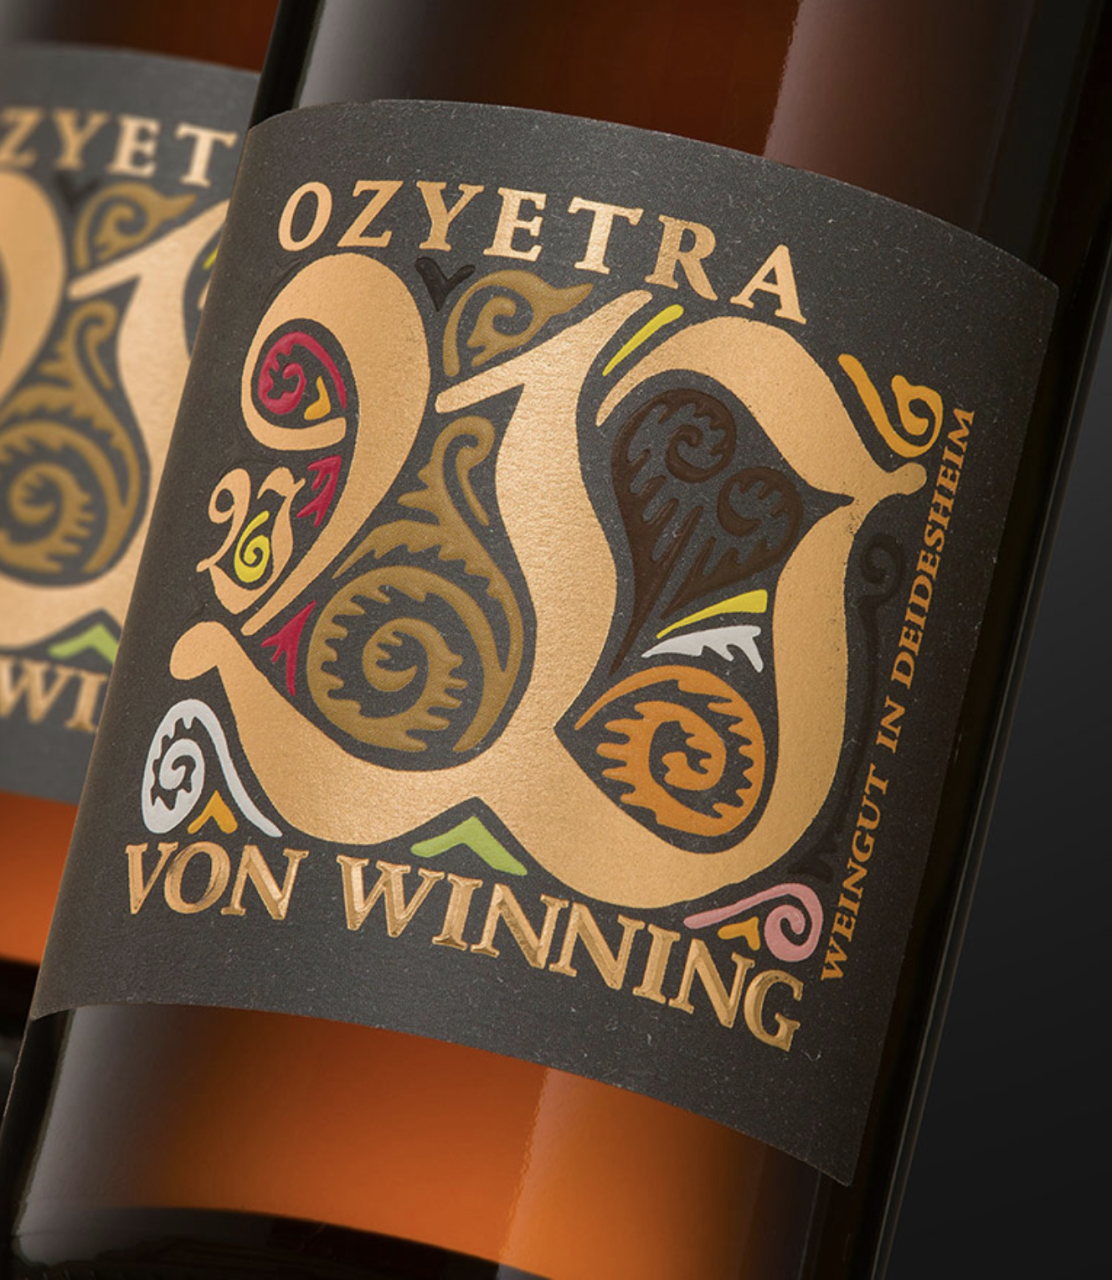 Von Winning Ozyetra Riesling 2020 Deutschland Pfalz Weißwein